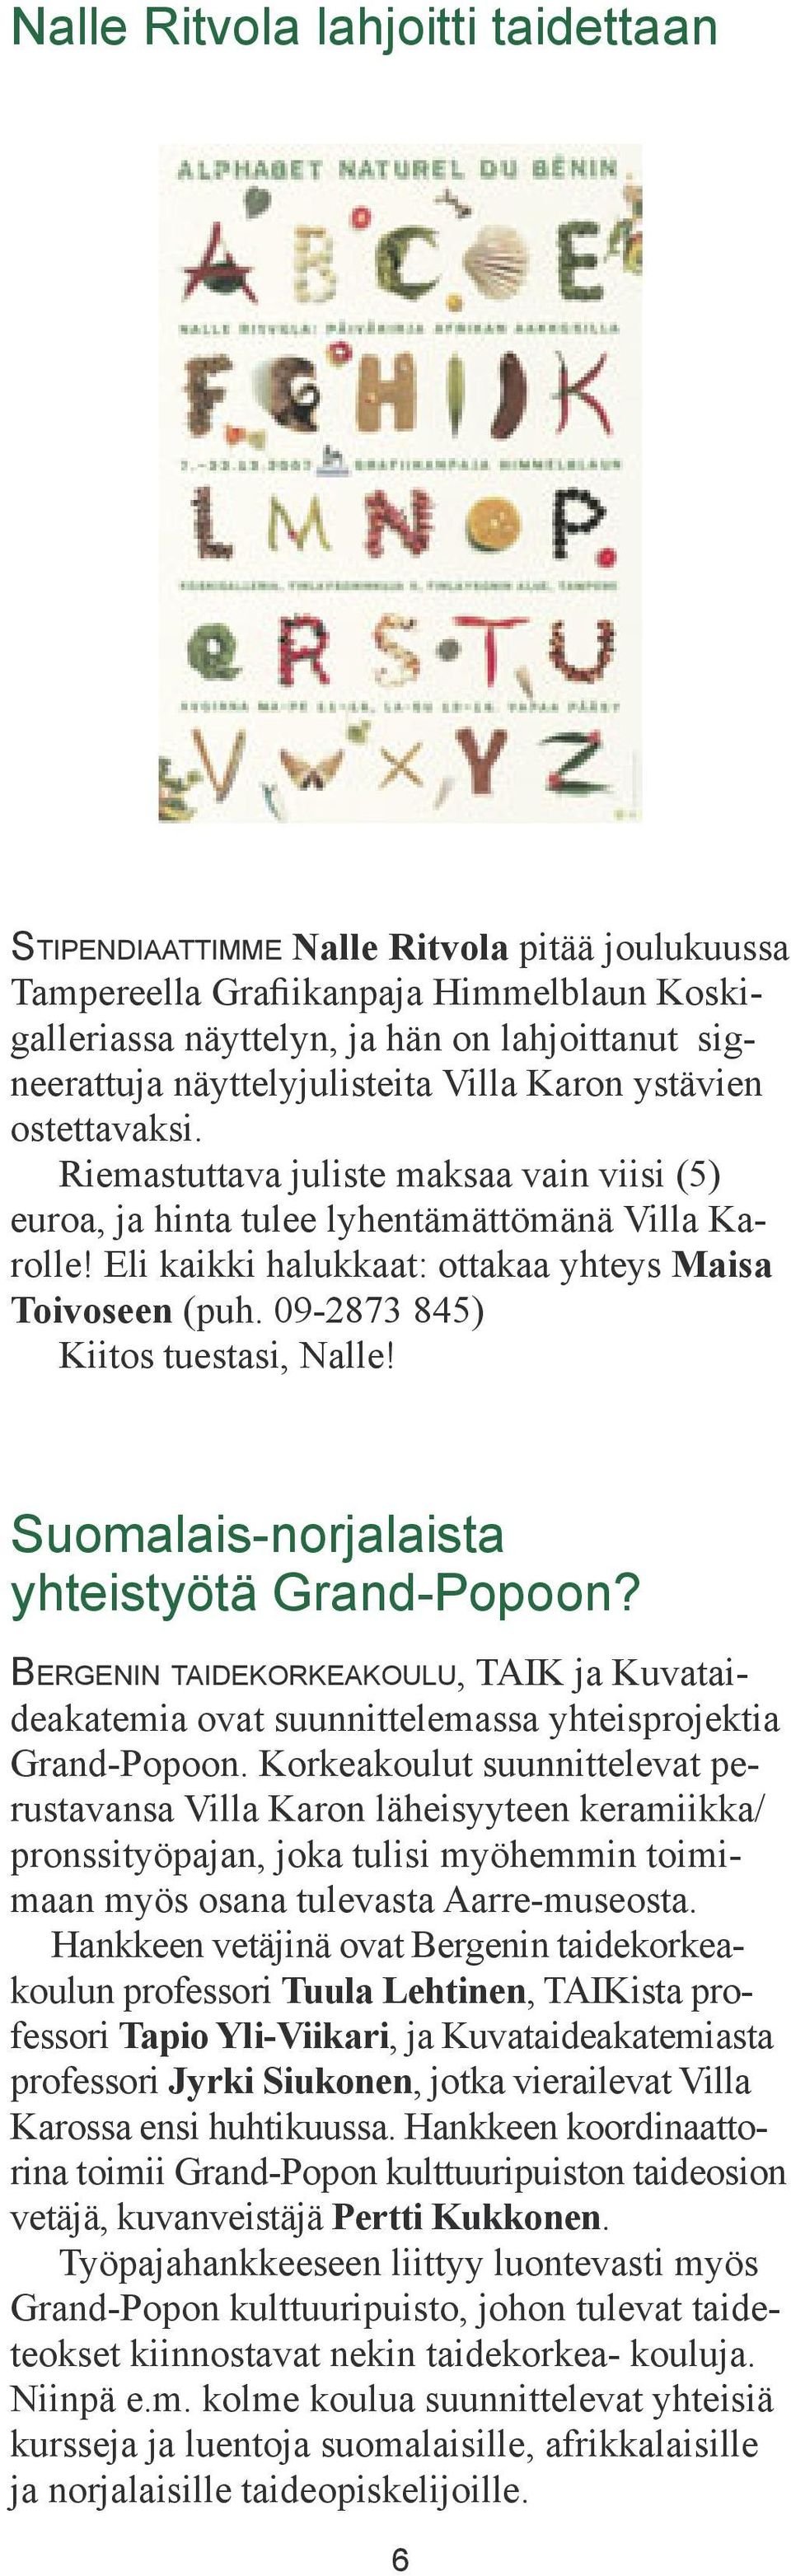 Eli kaikki halukkaat: ottakaa yhteys Maisa Toivoseen (puh. 09-2873 845) Kiitos tuestasi, Nalle! Suomalais-norjalaista yhteistyötä Grand-Popoon?